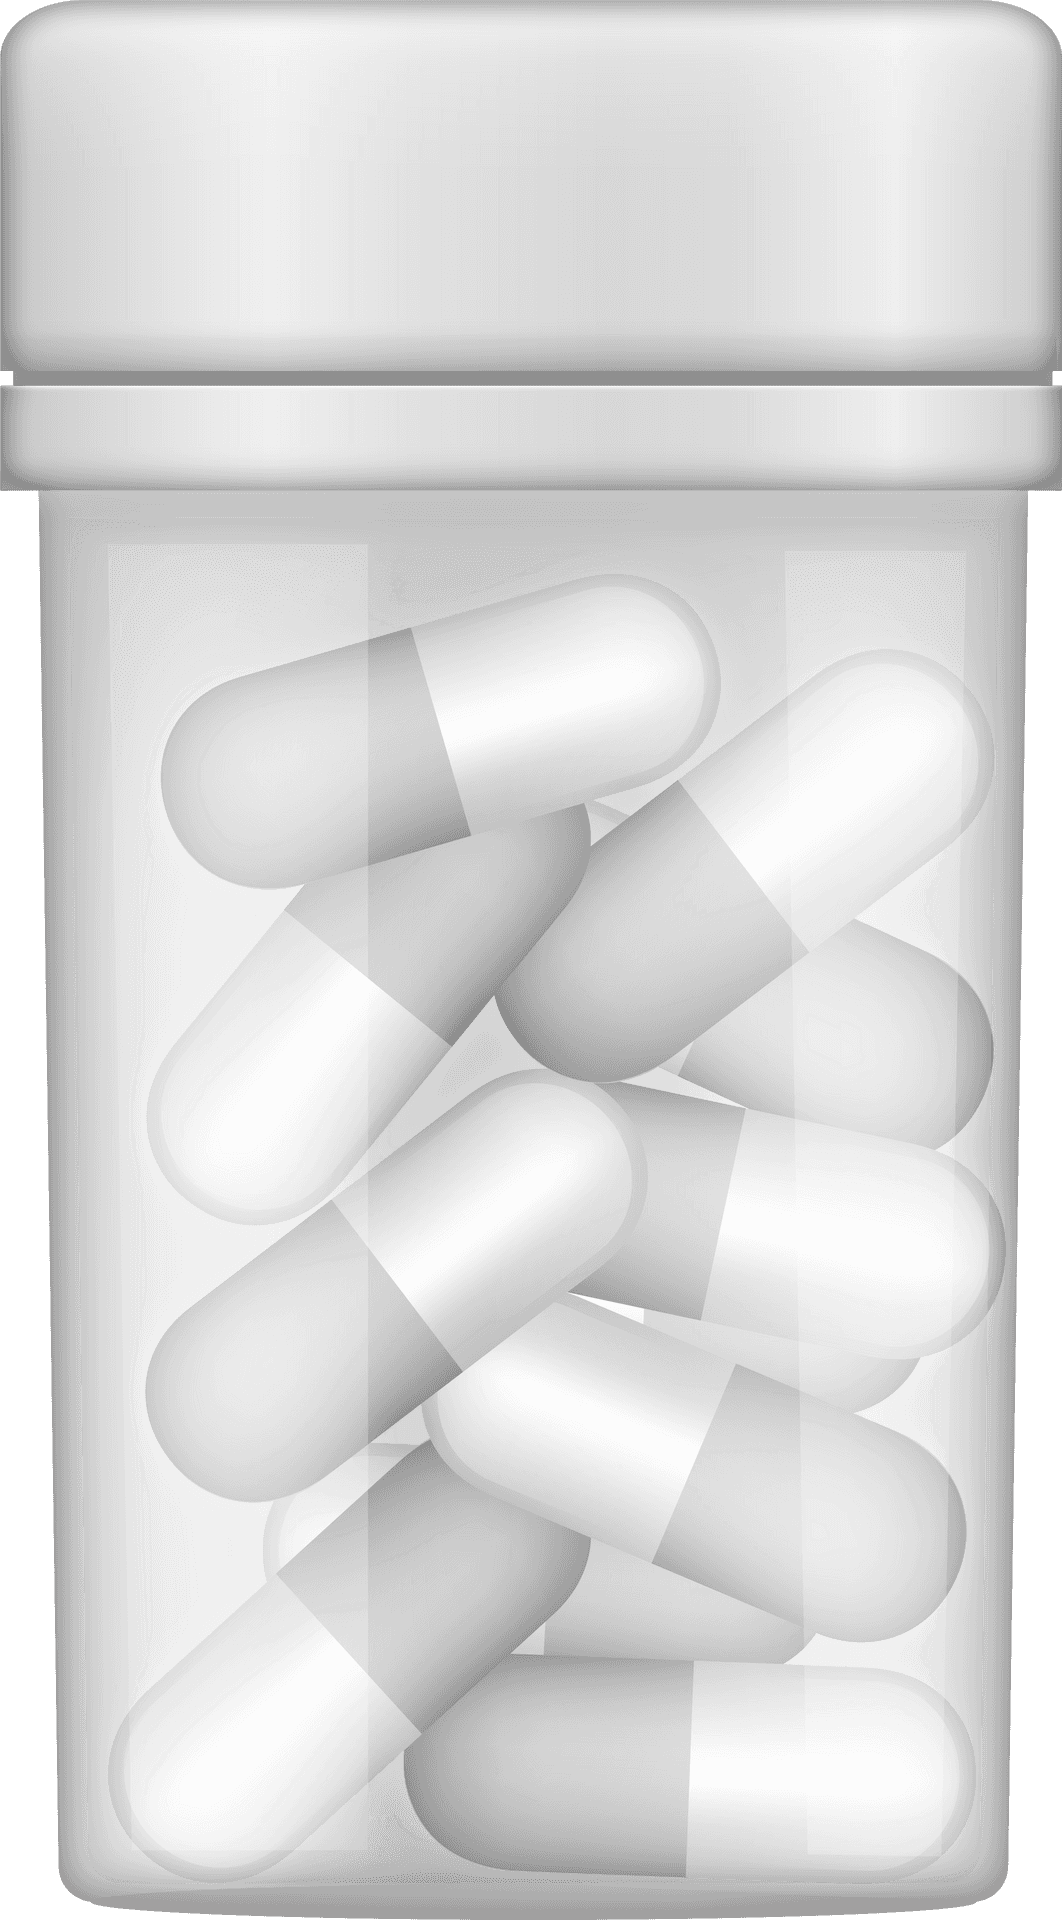 White Capsule Pillsin Bottle PNG image